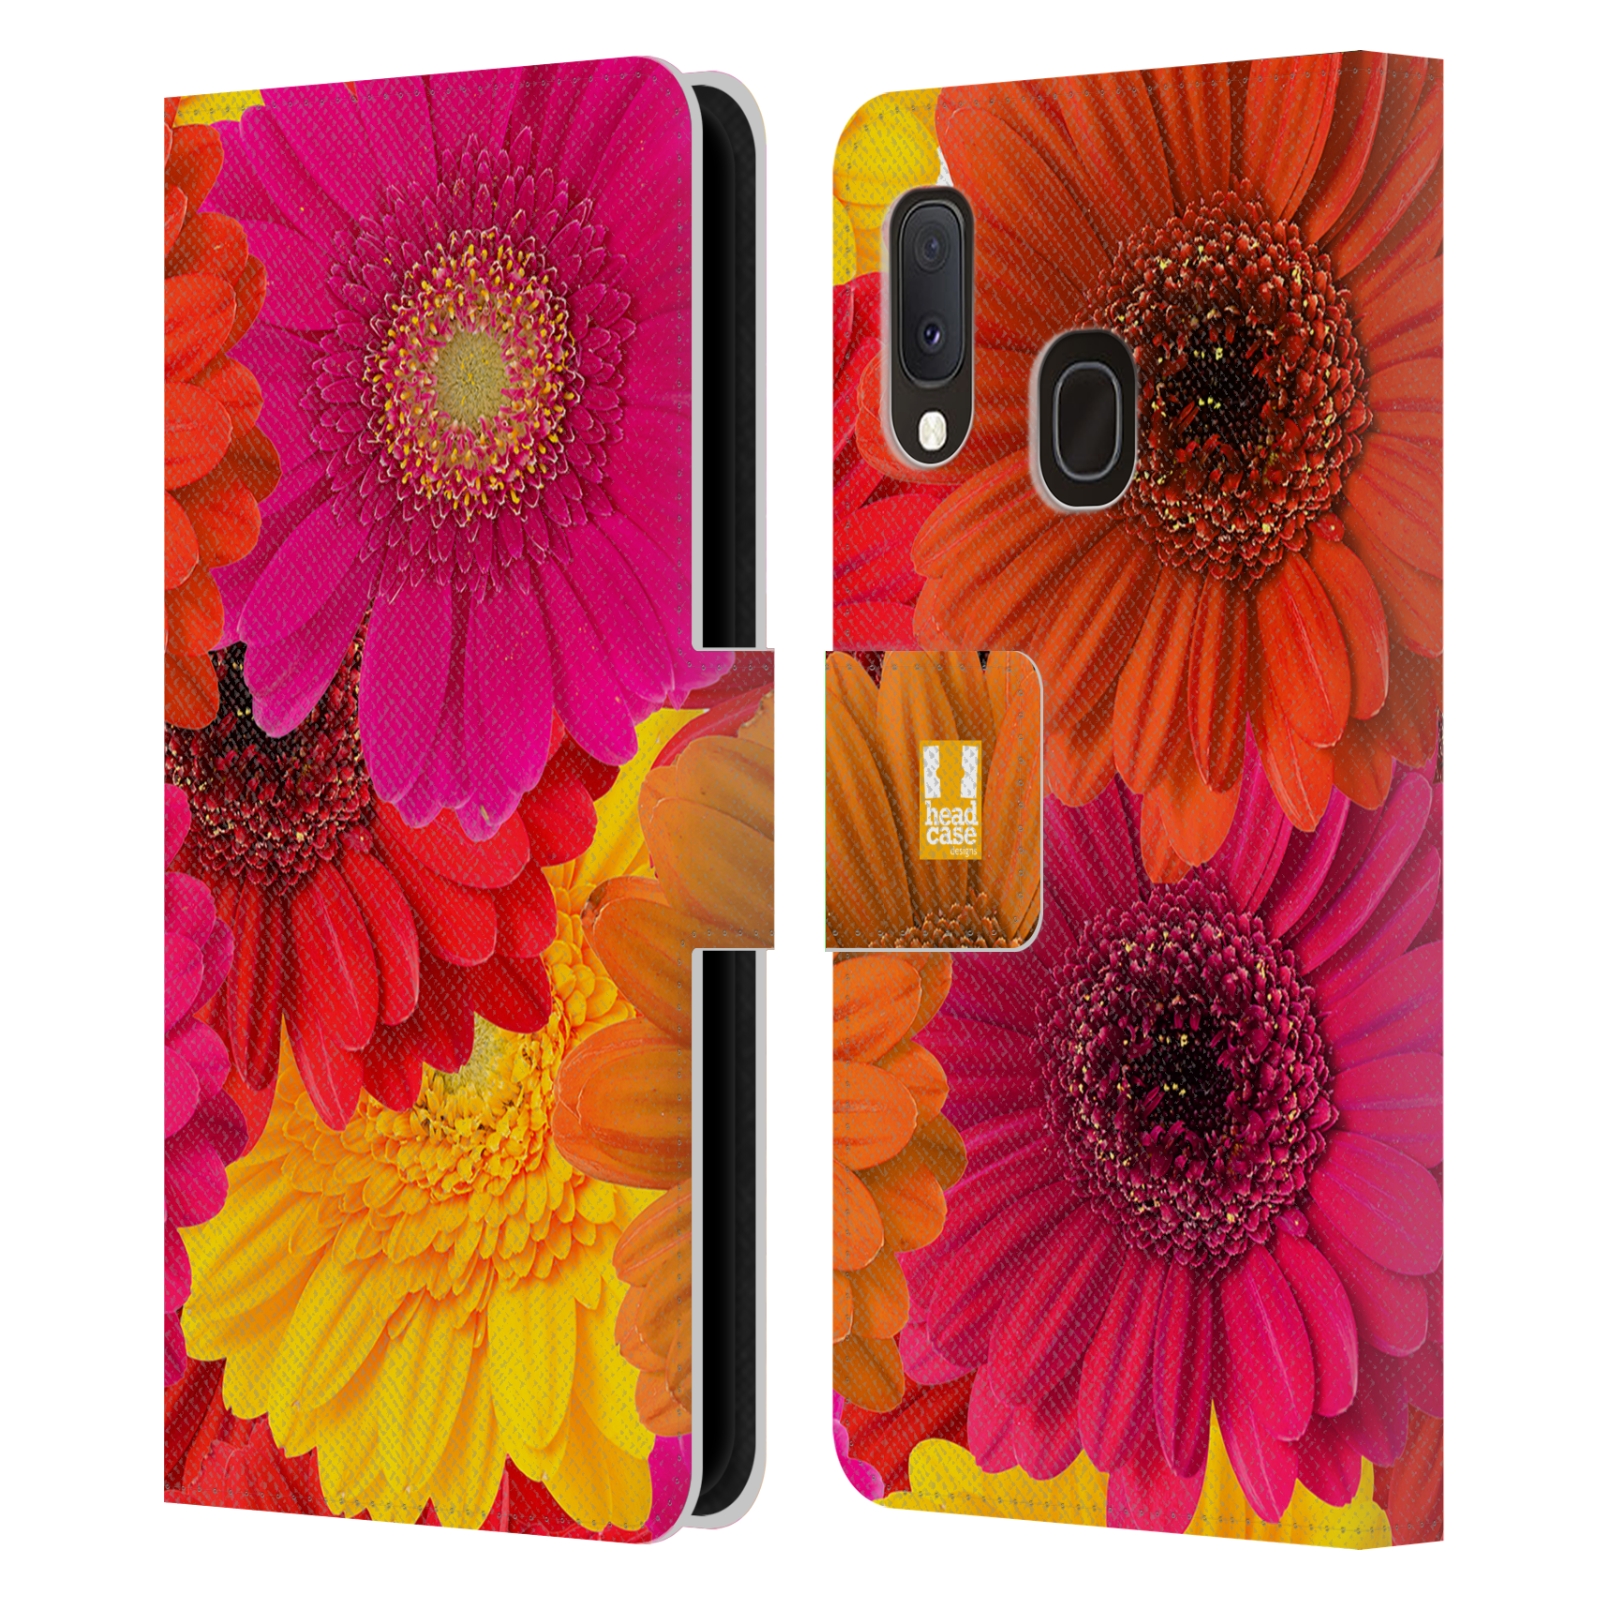 Pouzdro na mobil Samsung Galaxy A20e květy foto fialová, oranžová GERBERA